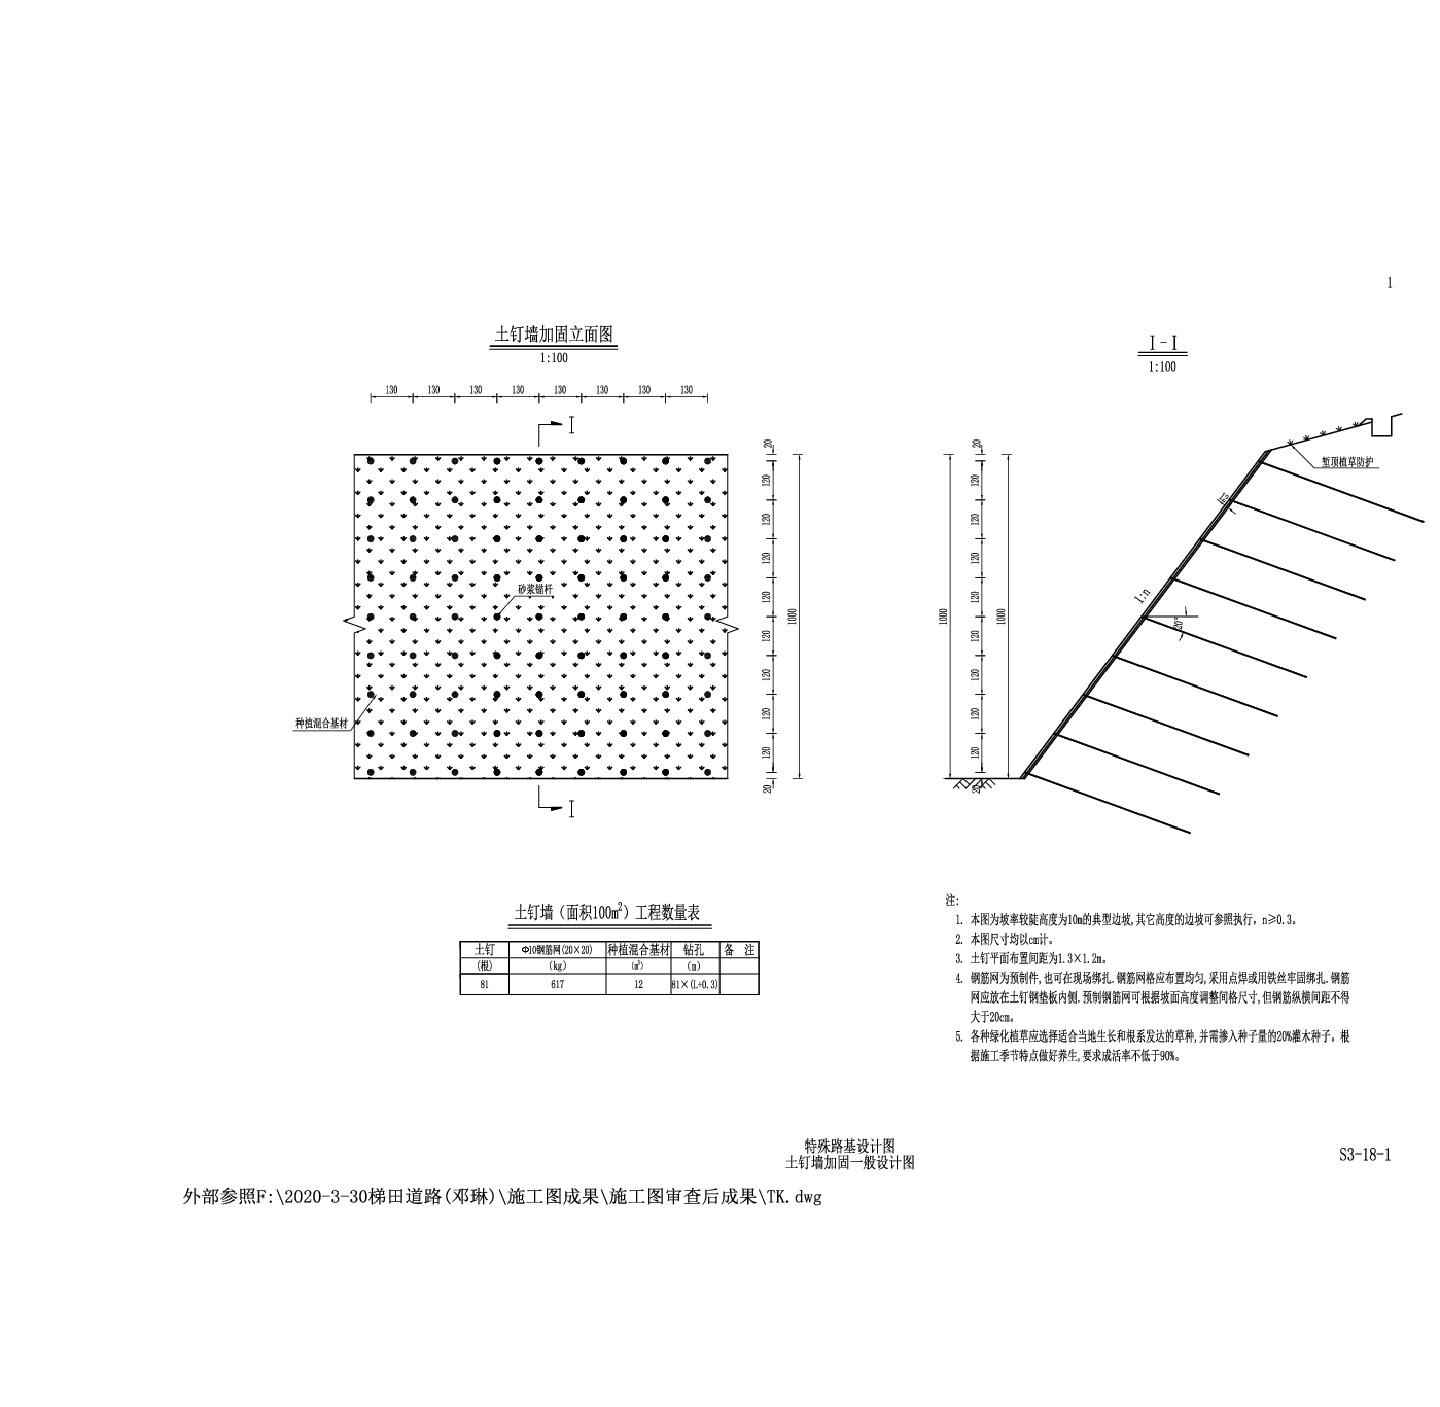 S3-18-1 特殊路基设计图 土钉墙加固标准图